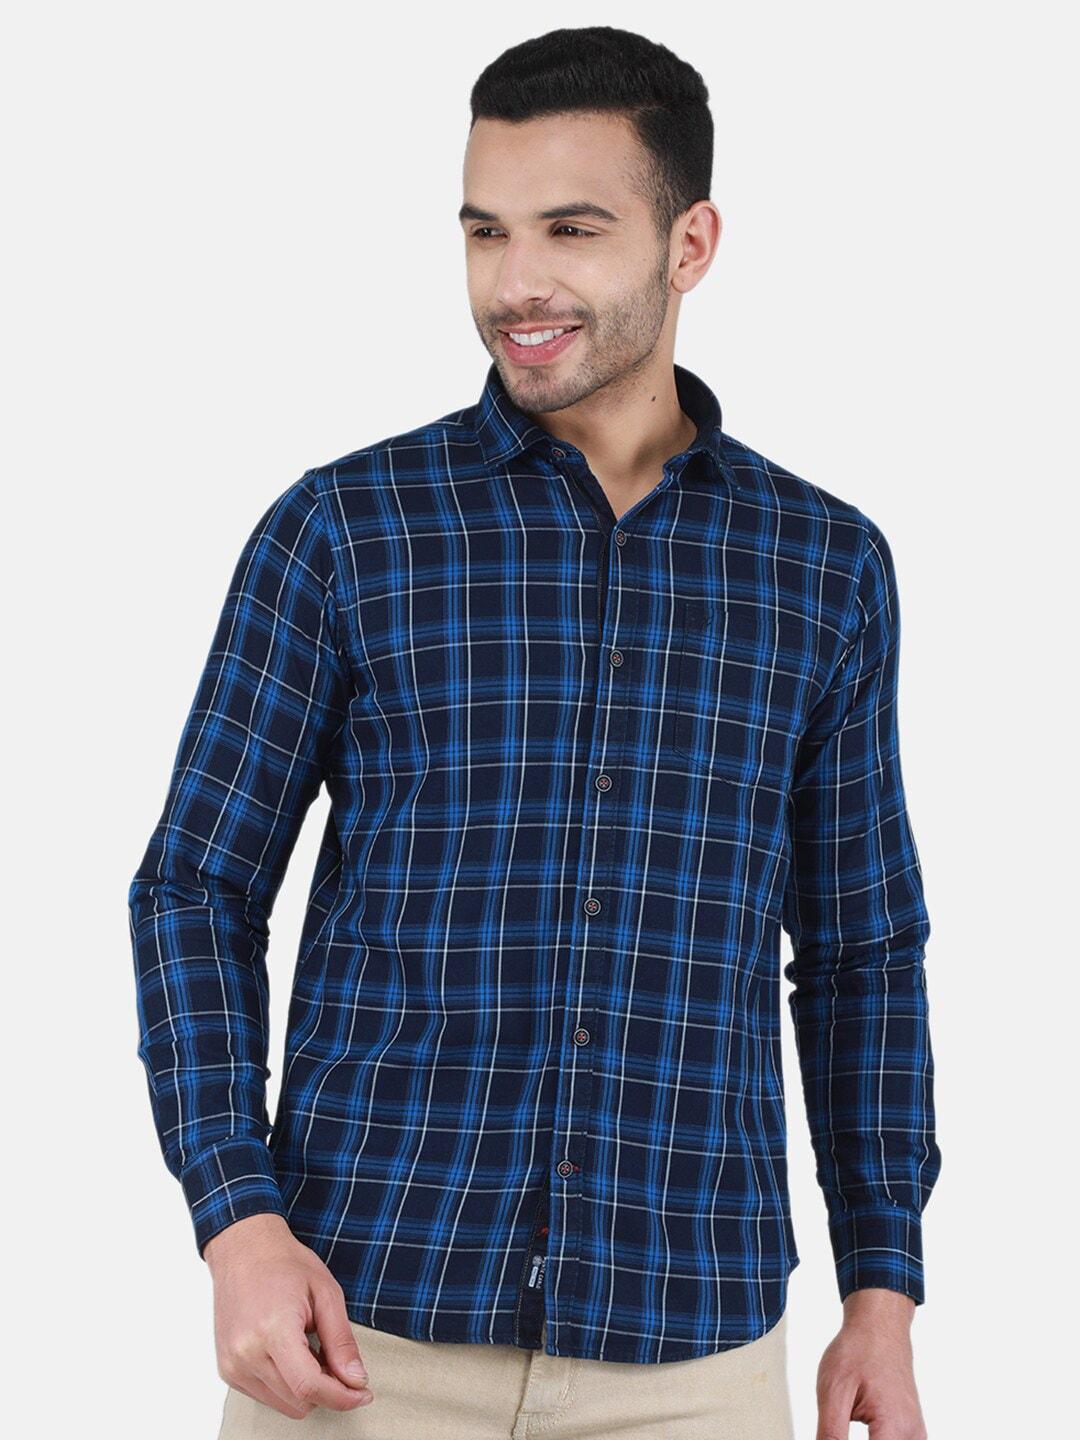 monte-carlo-tartan-checked-opaque-checked-casual-shirt